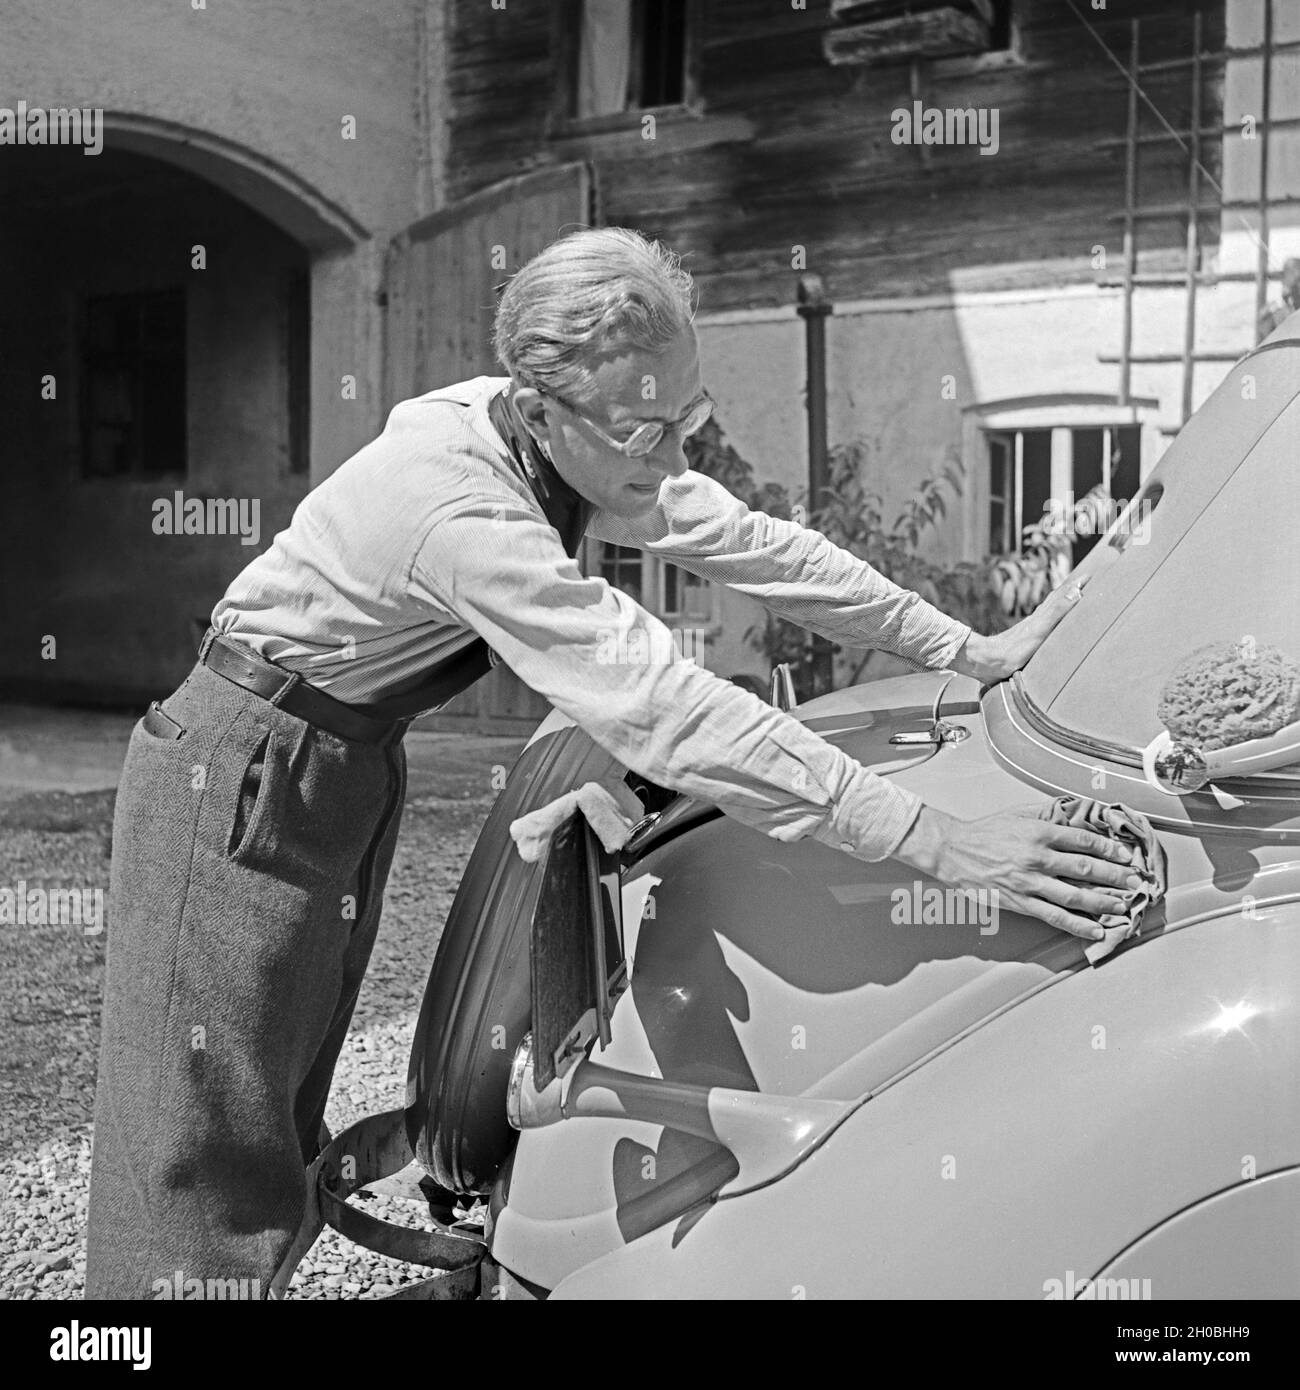 Ein Mann beim Wagenwaschen, Deutschland 1930er Jahre. A man washing a car, Germany 1930s. Stock Photo